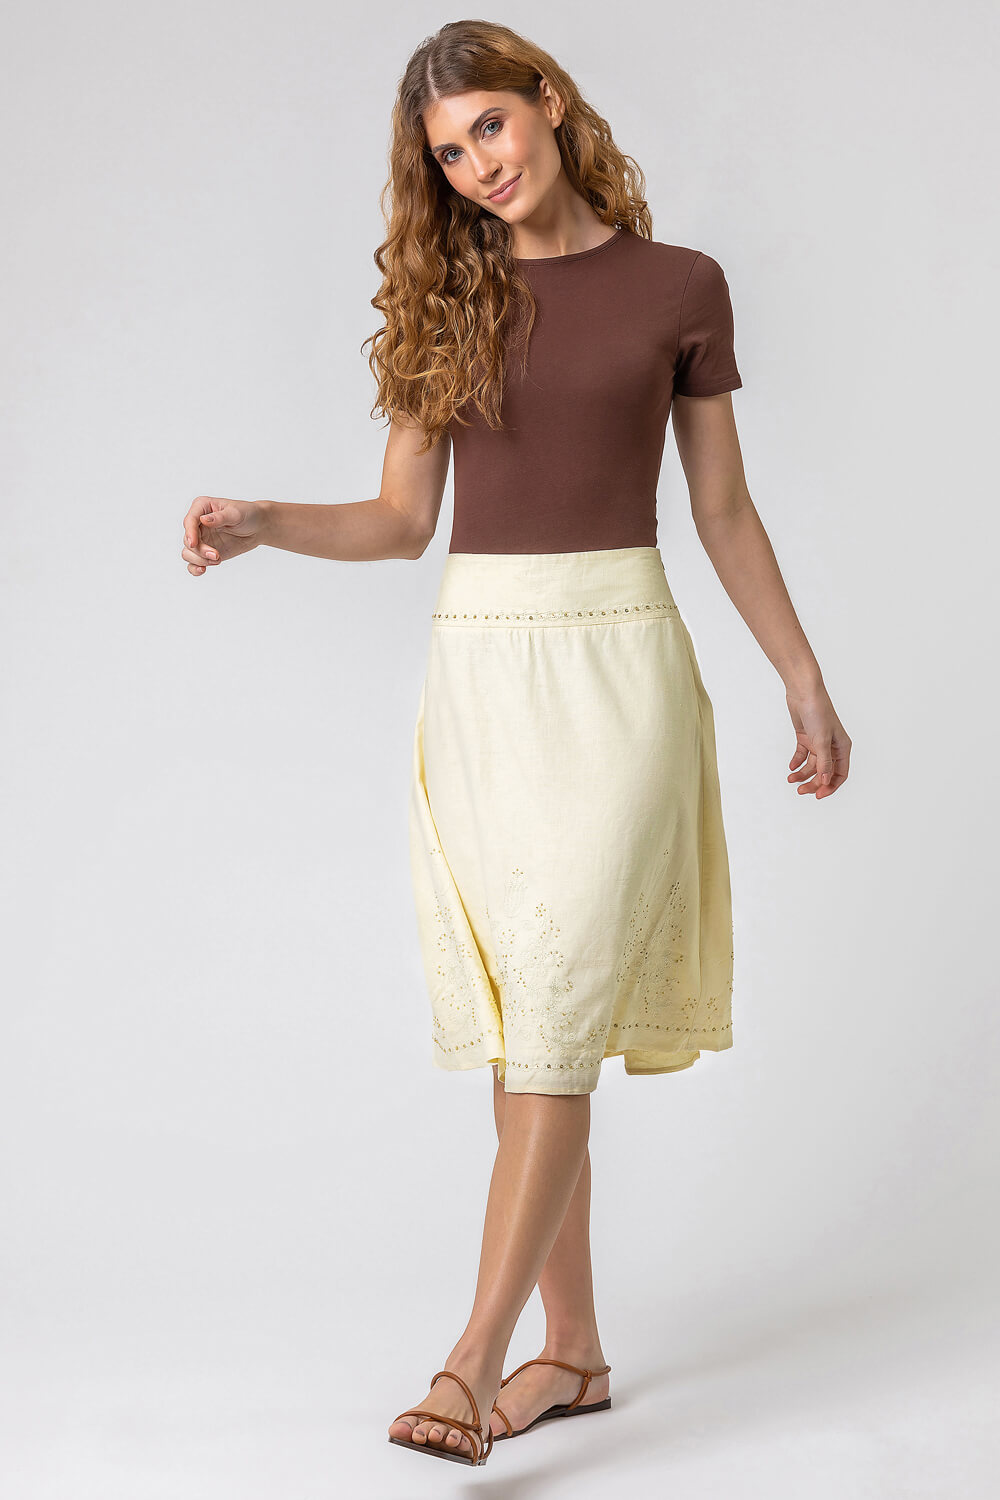 Lemon  Sequin Embellished A-Line Skirt, Image 3 of 4